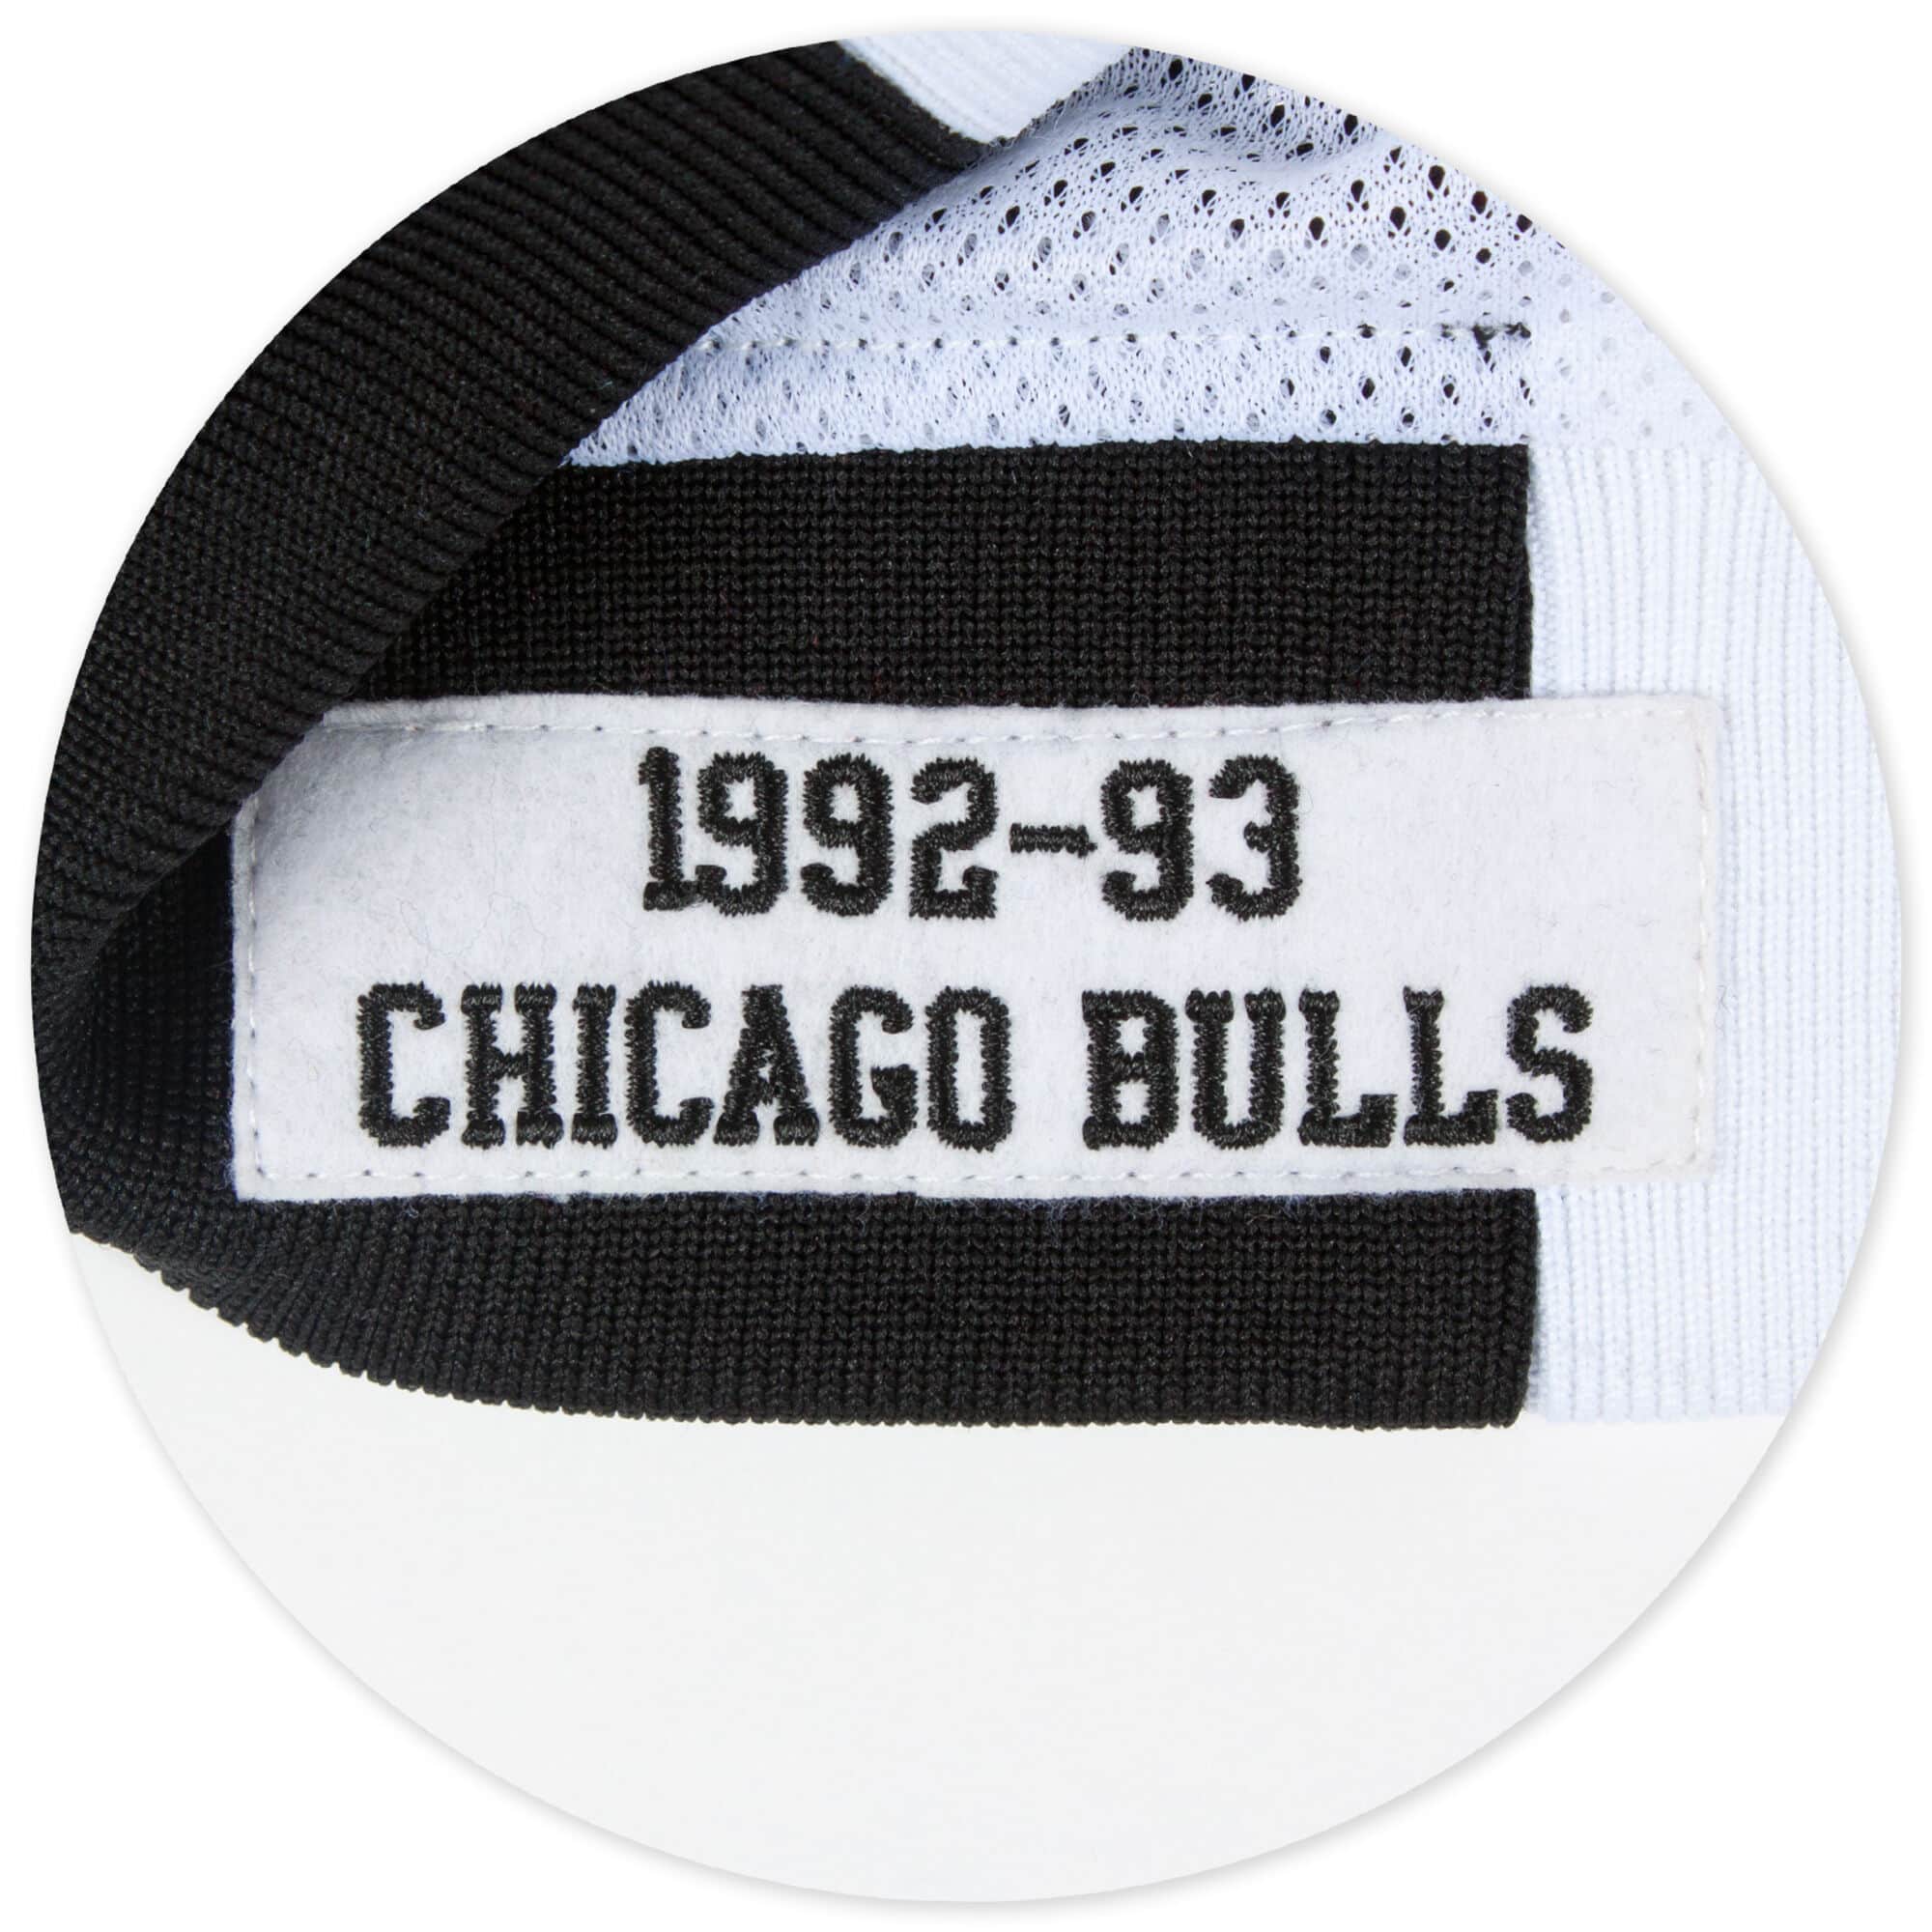 Mitchell & Ness jacket Chicago Bulls white/black Authentic Warm Up Jacket